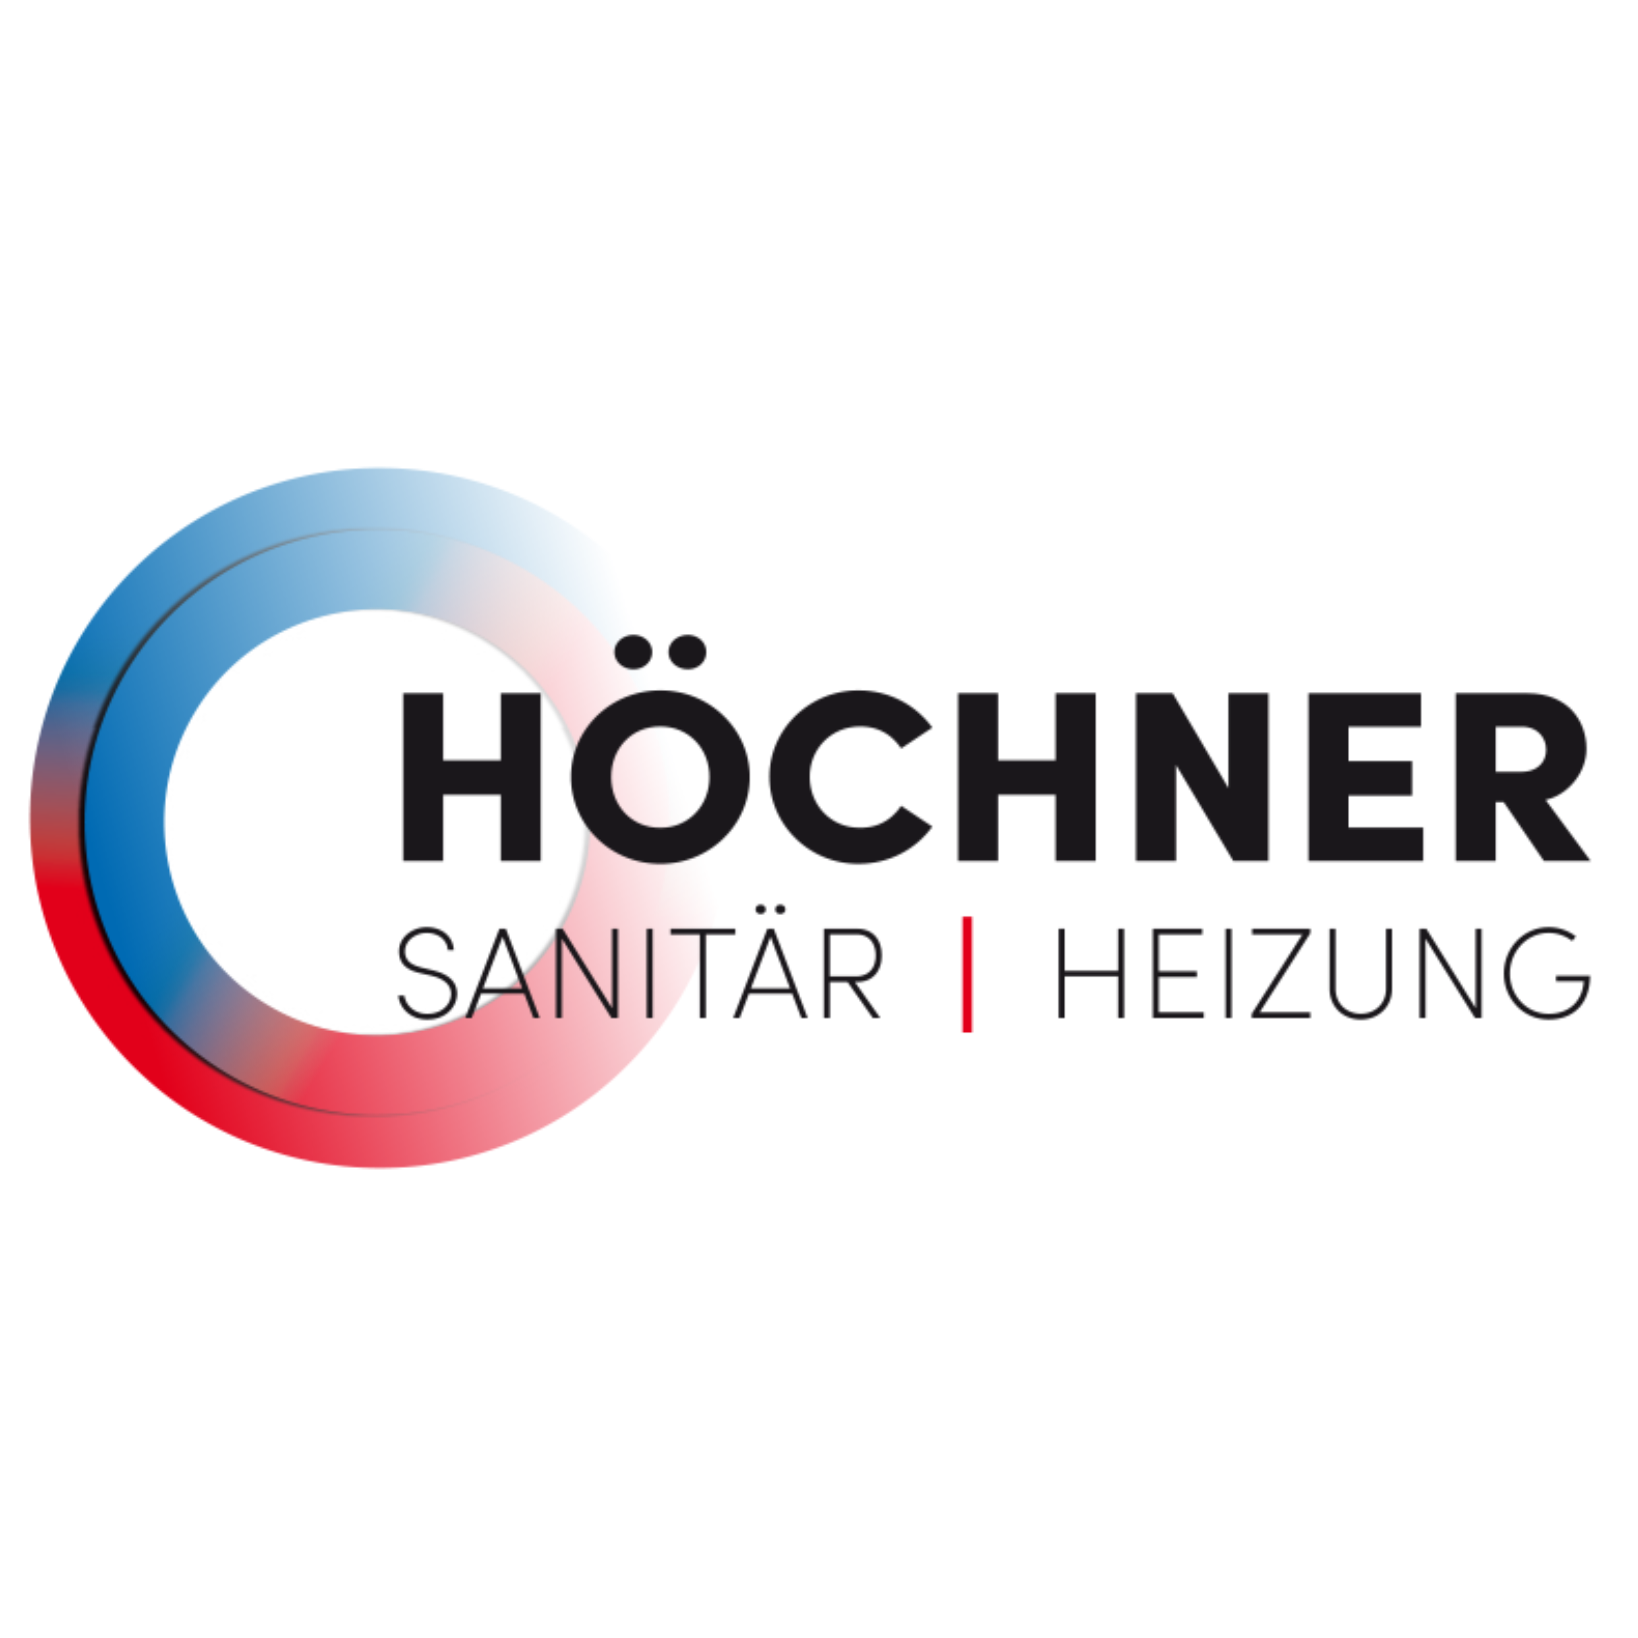 Höchner Sanitär Heizung Logo